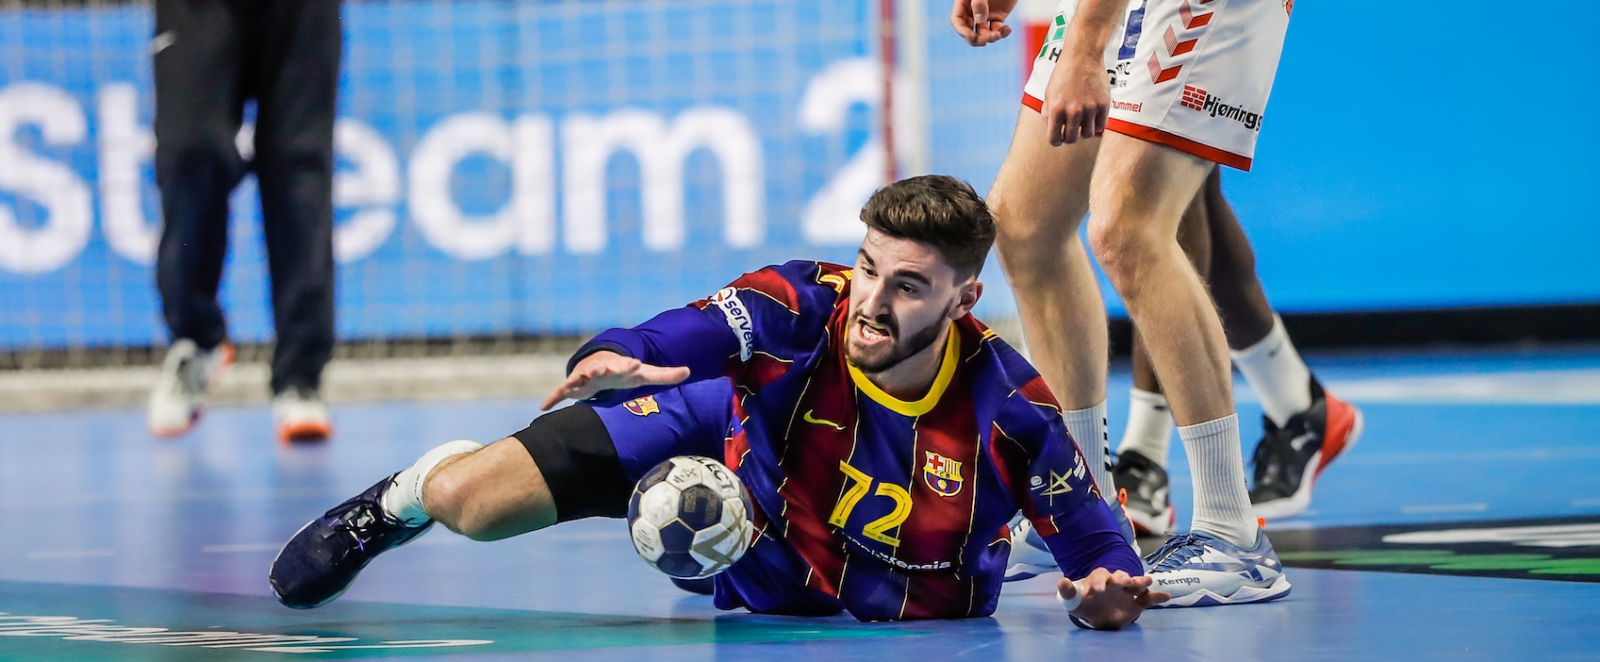 Barcelona Spieler liegt auf dem Boden und greift nach dem Handball